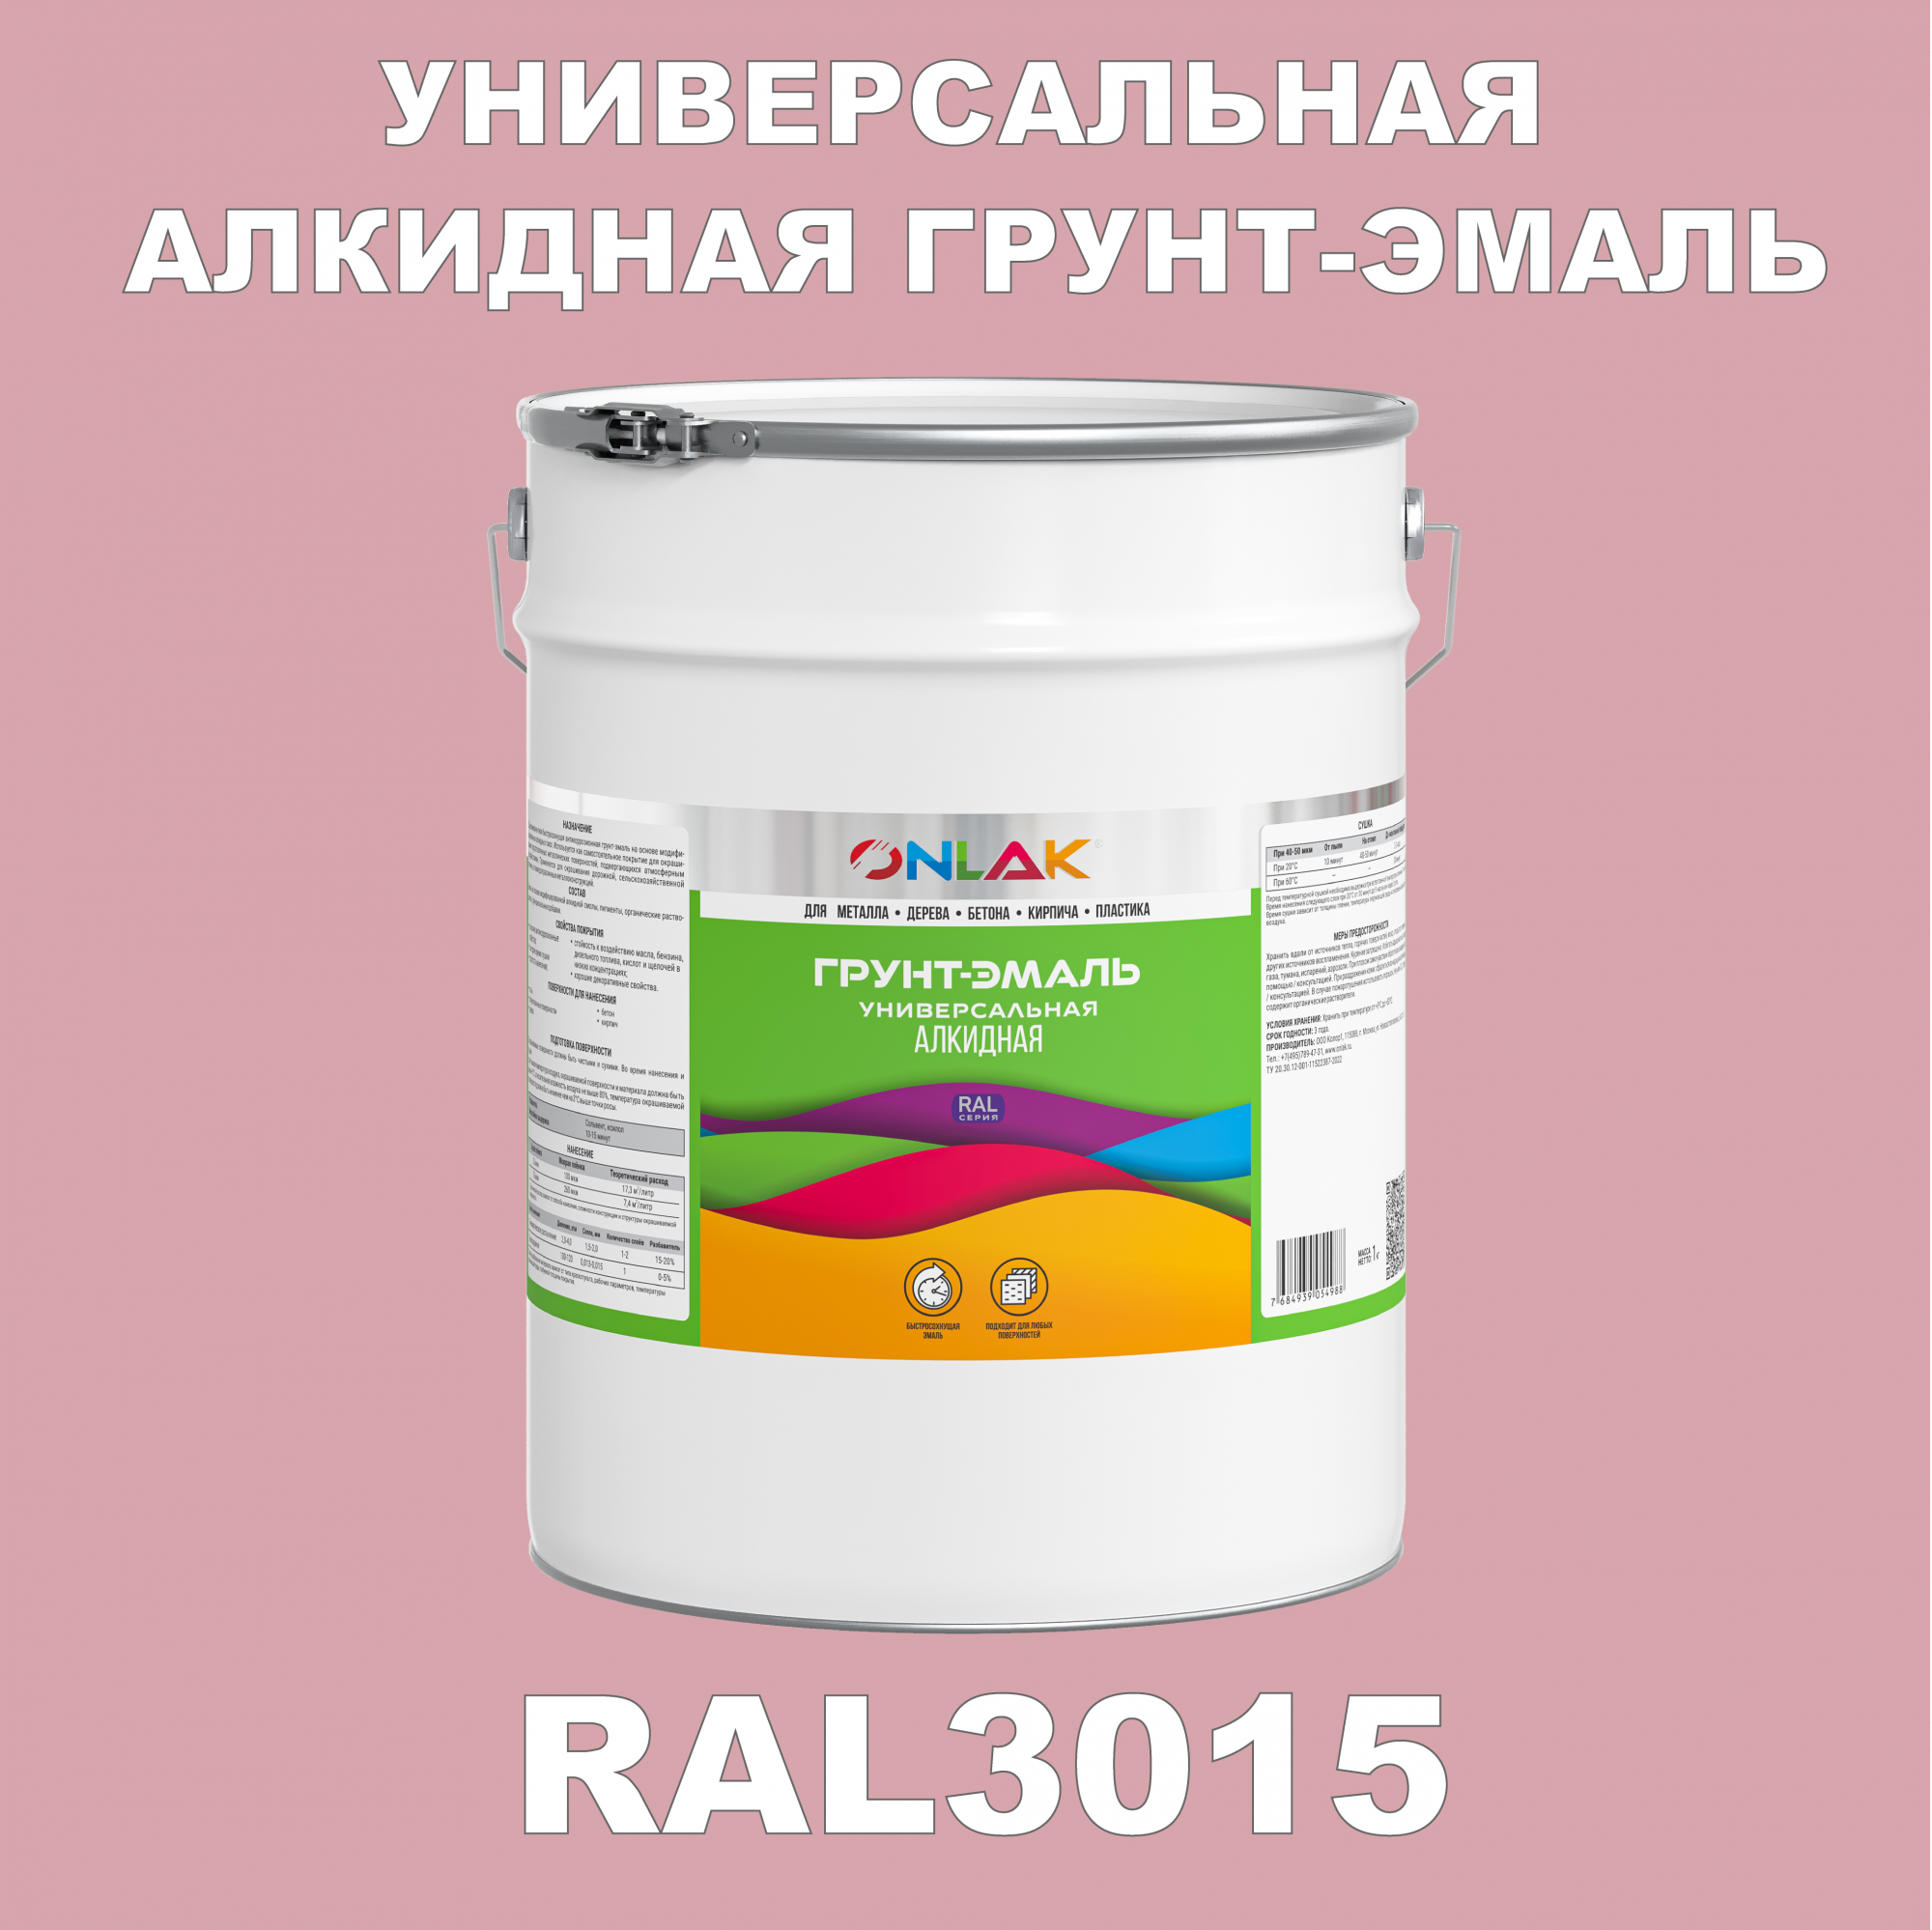 Грунт-эмаль ONLAK 1К RAL3015 антикоррозионная алкидная по металлу по ржавчине 20 кг грунт эмаль skladno по ржавчине алкидная желтая 1 8 кг